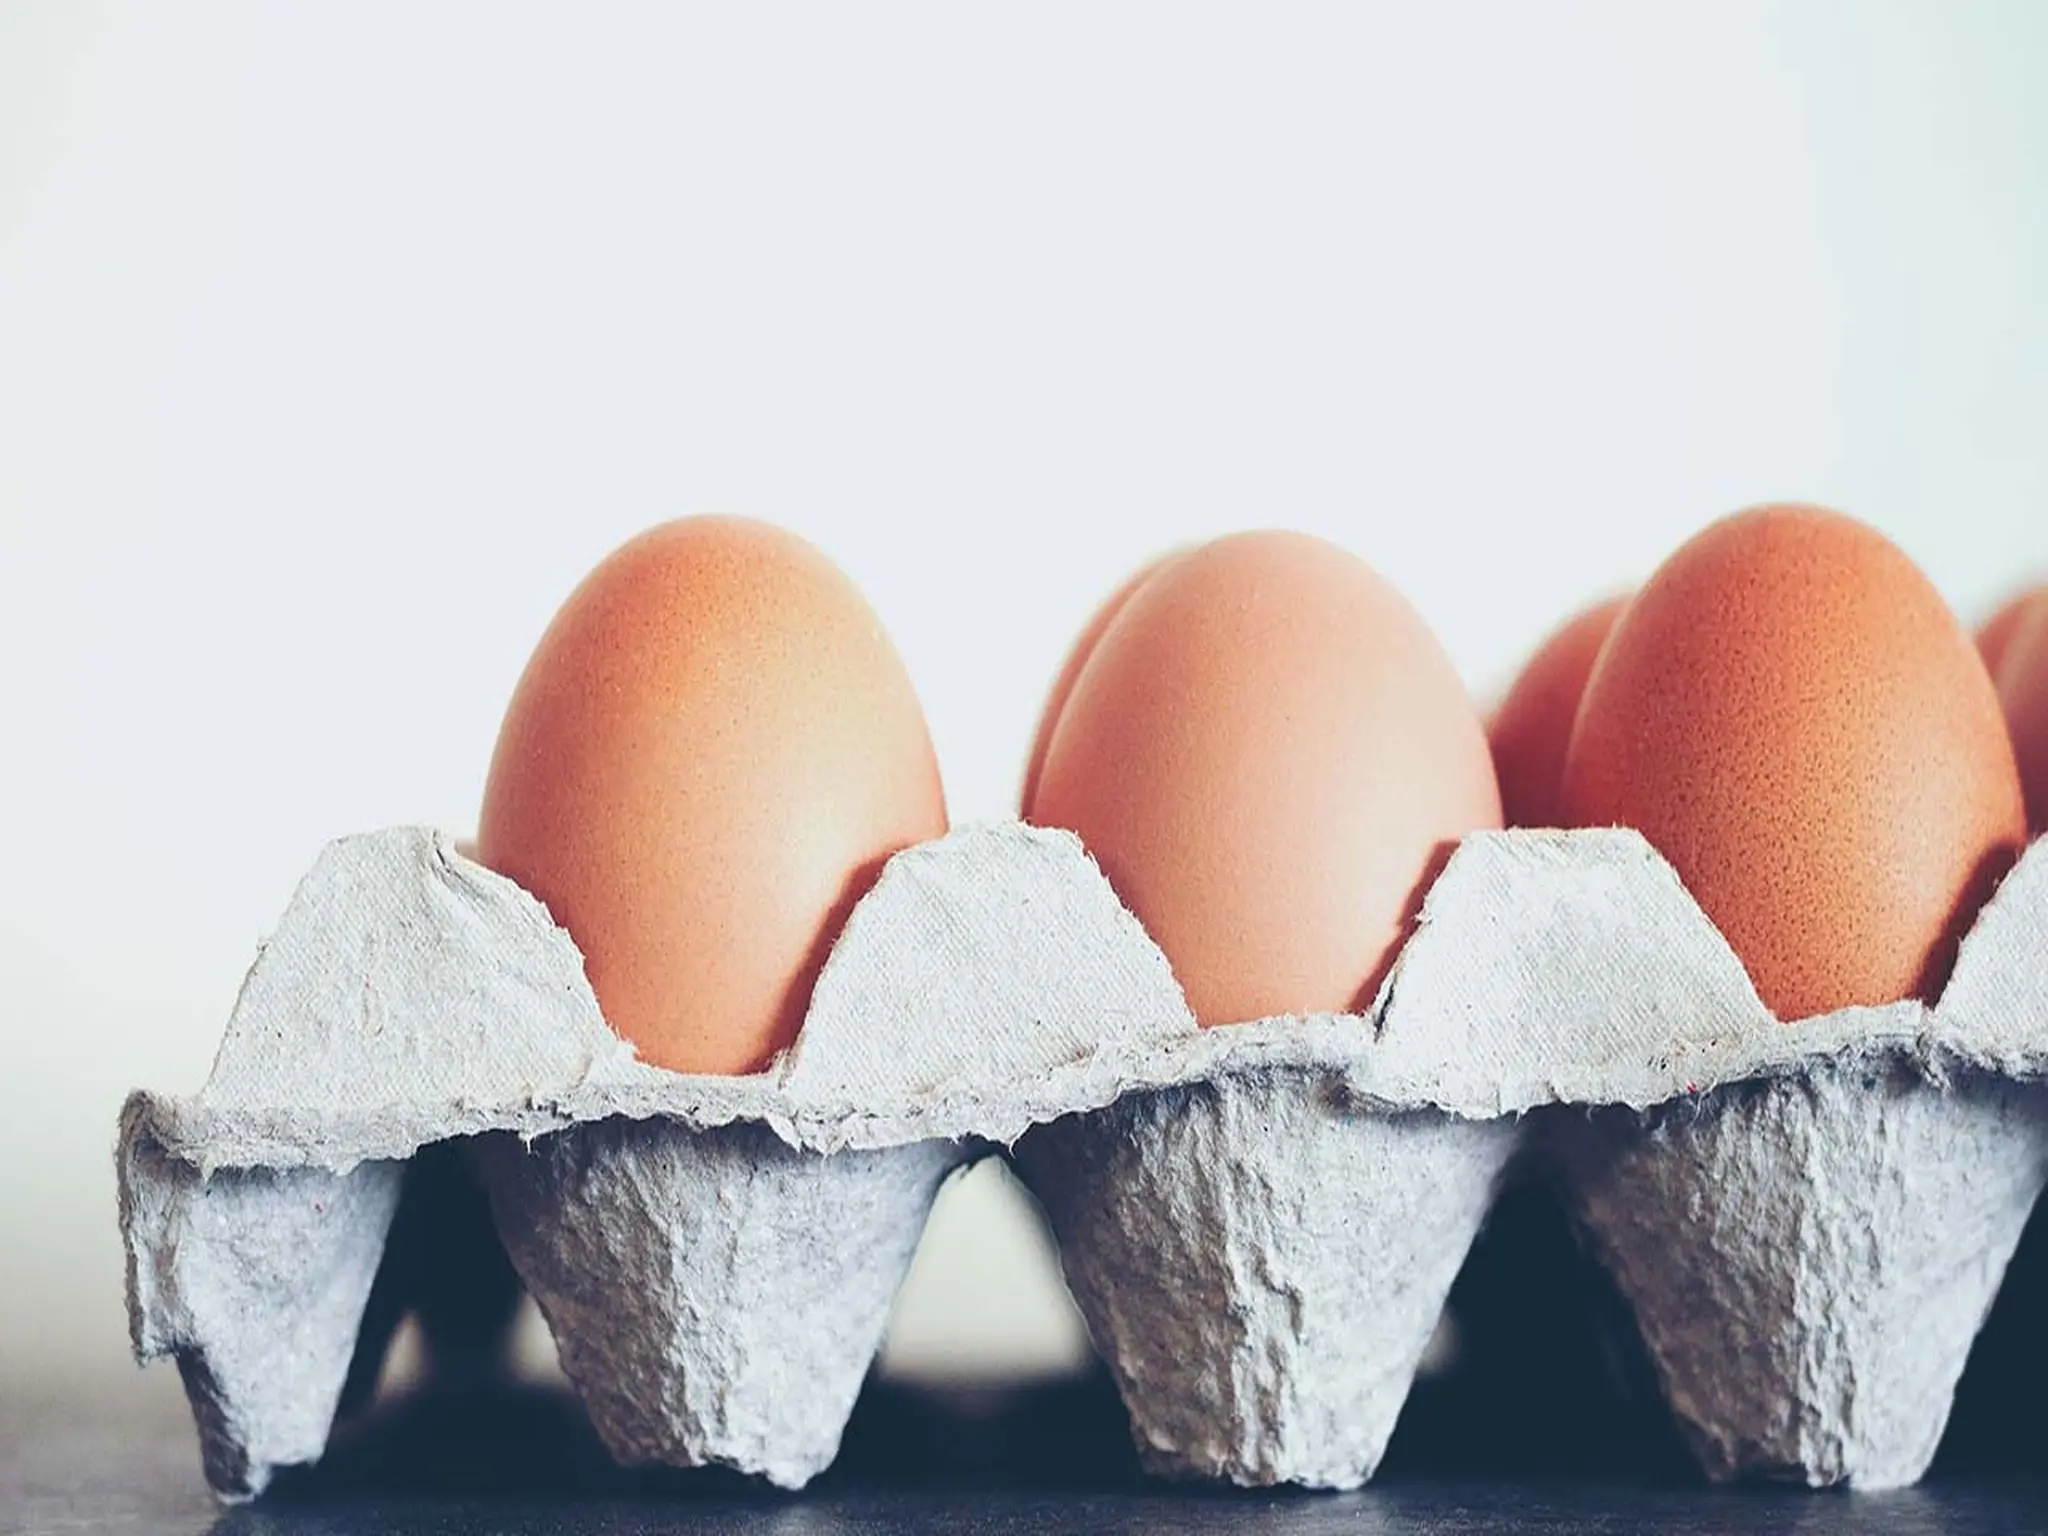 أسعار البيض تصل إلي 55 جنية مصري للكرتونة اليوم